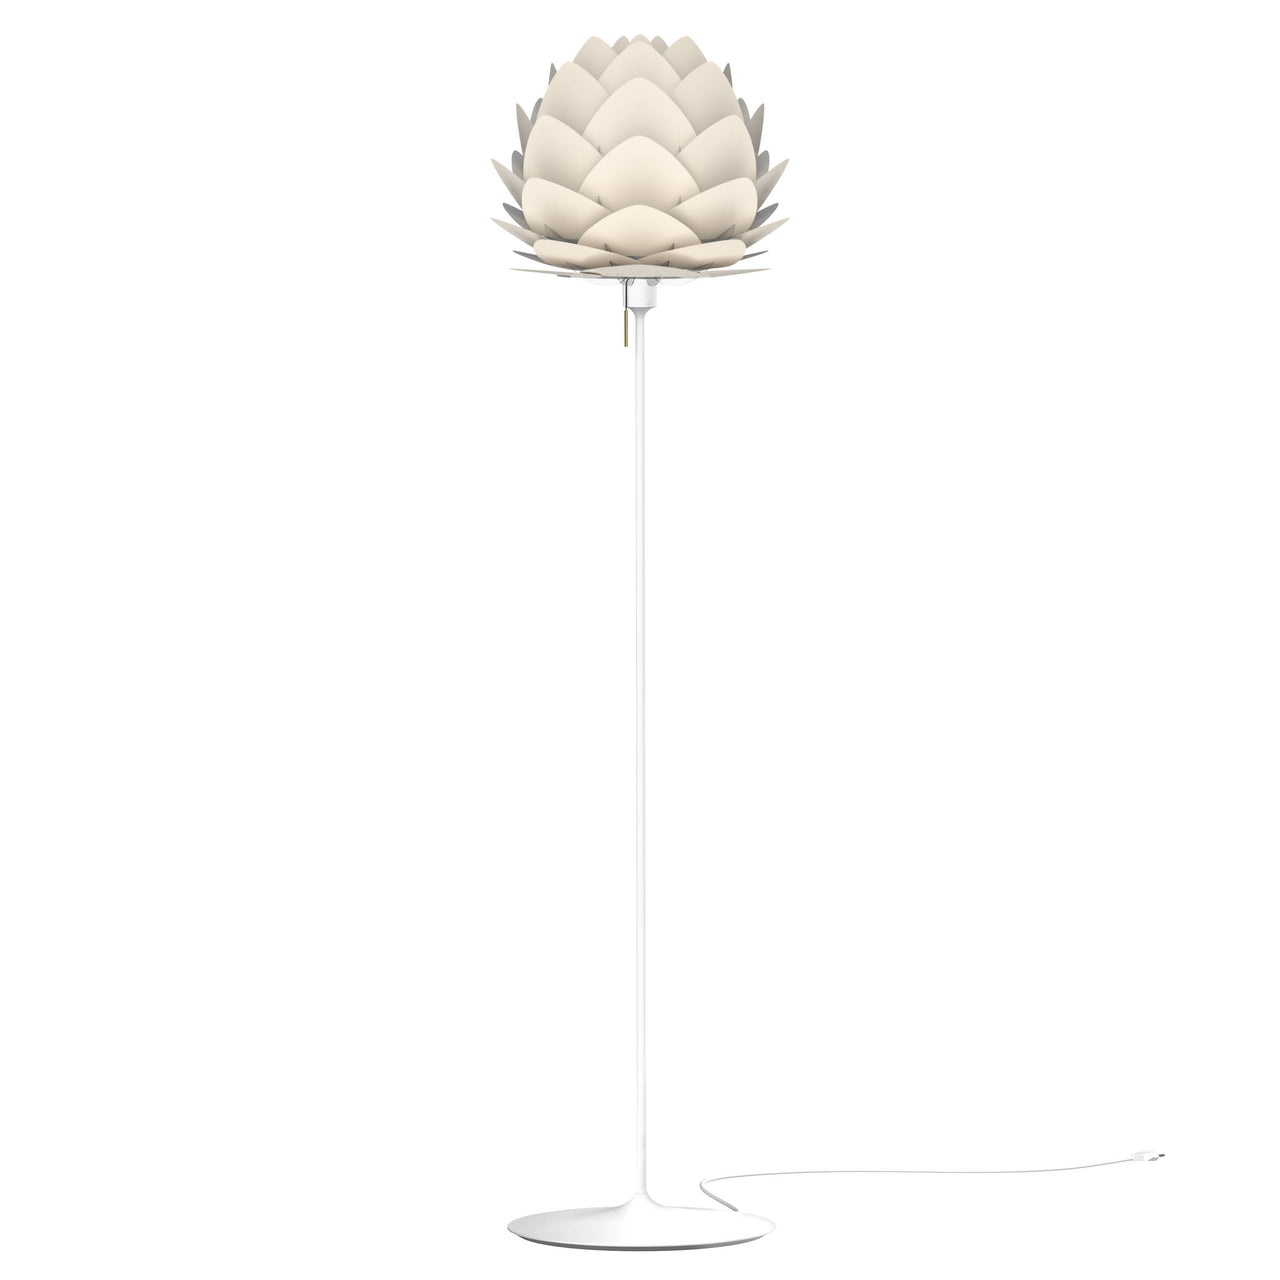 Aluvia Champagne Floor Lamp: Medium - 23.3